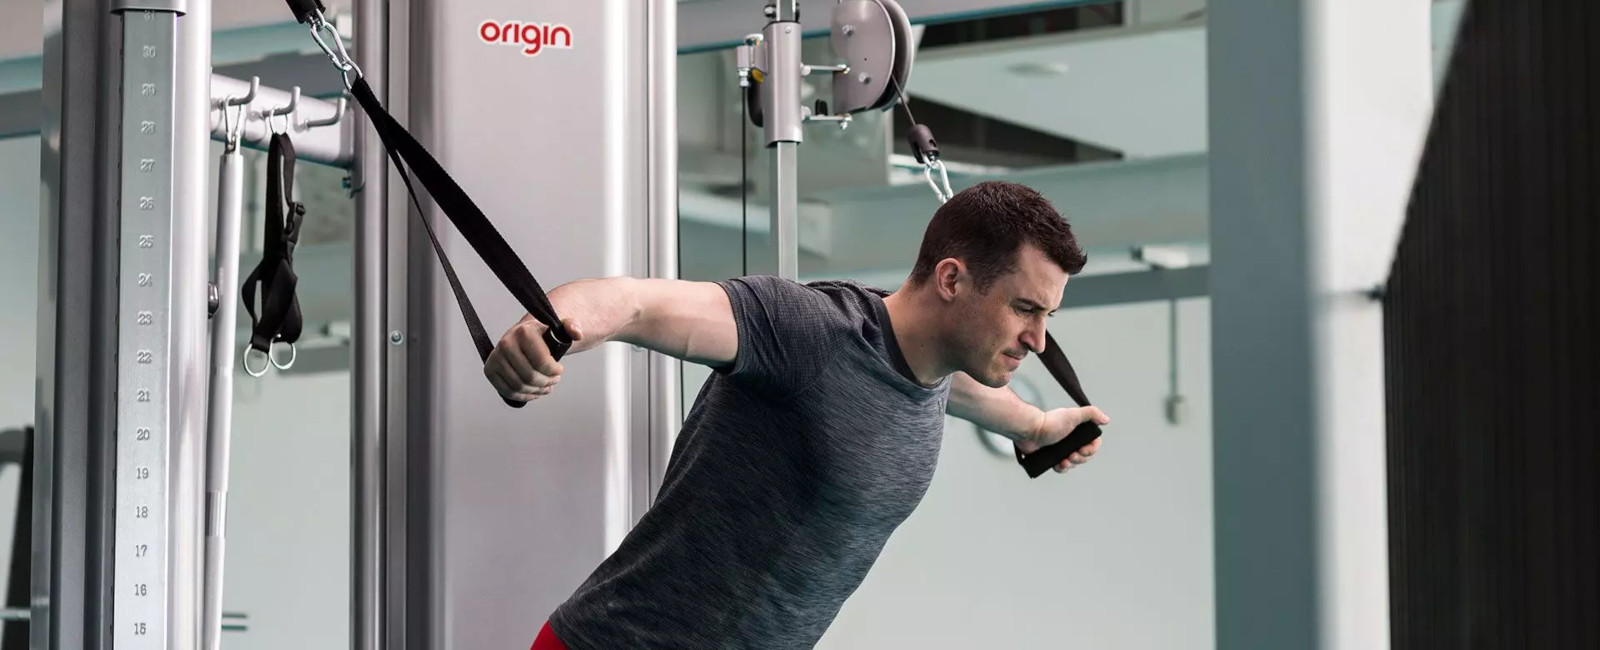 a man using an origin fitness strength machine